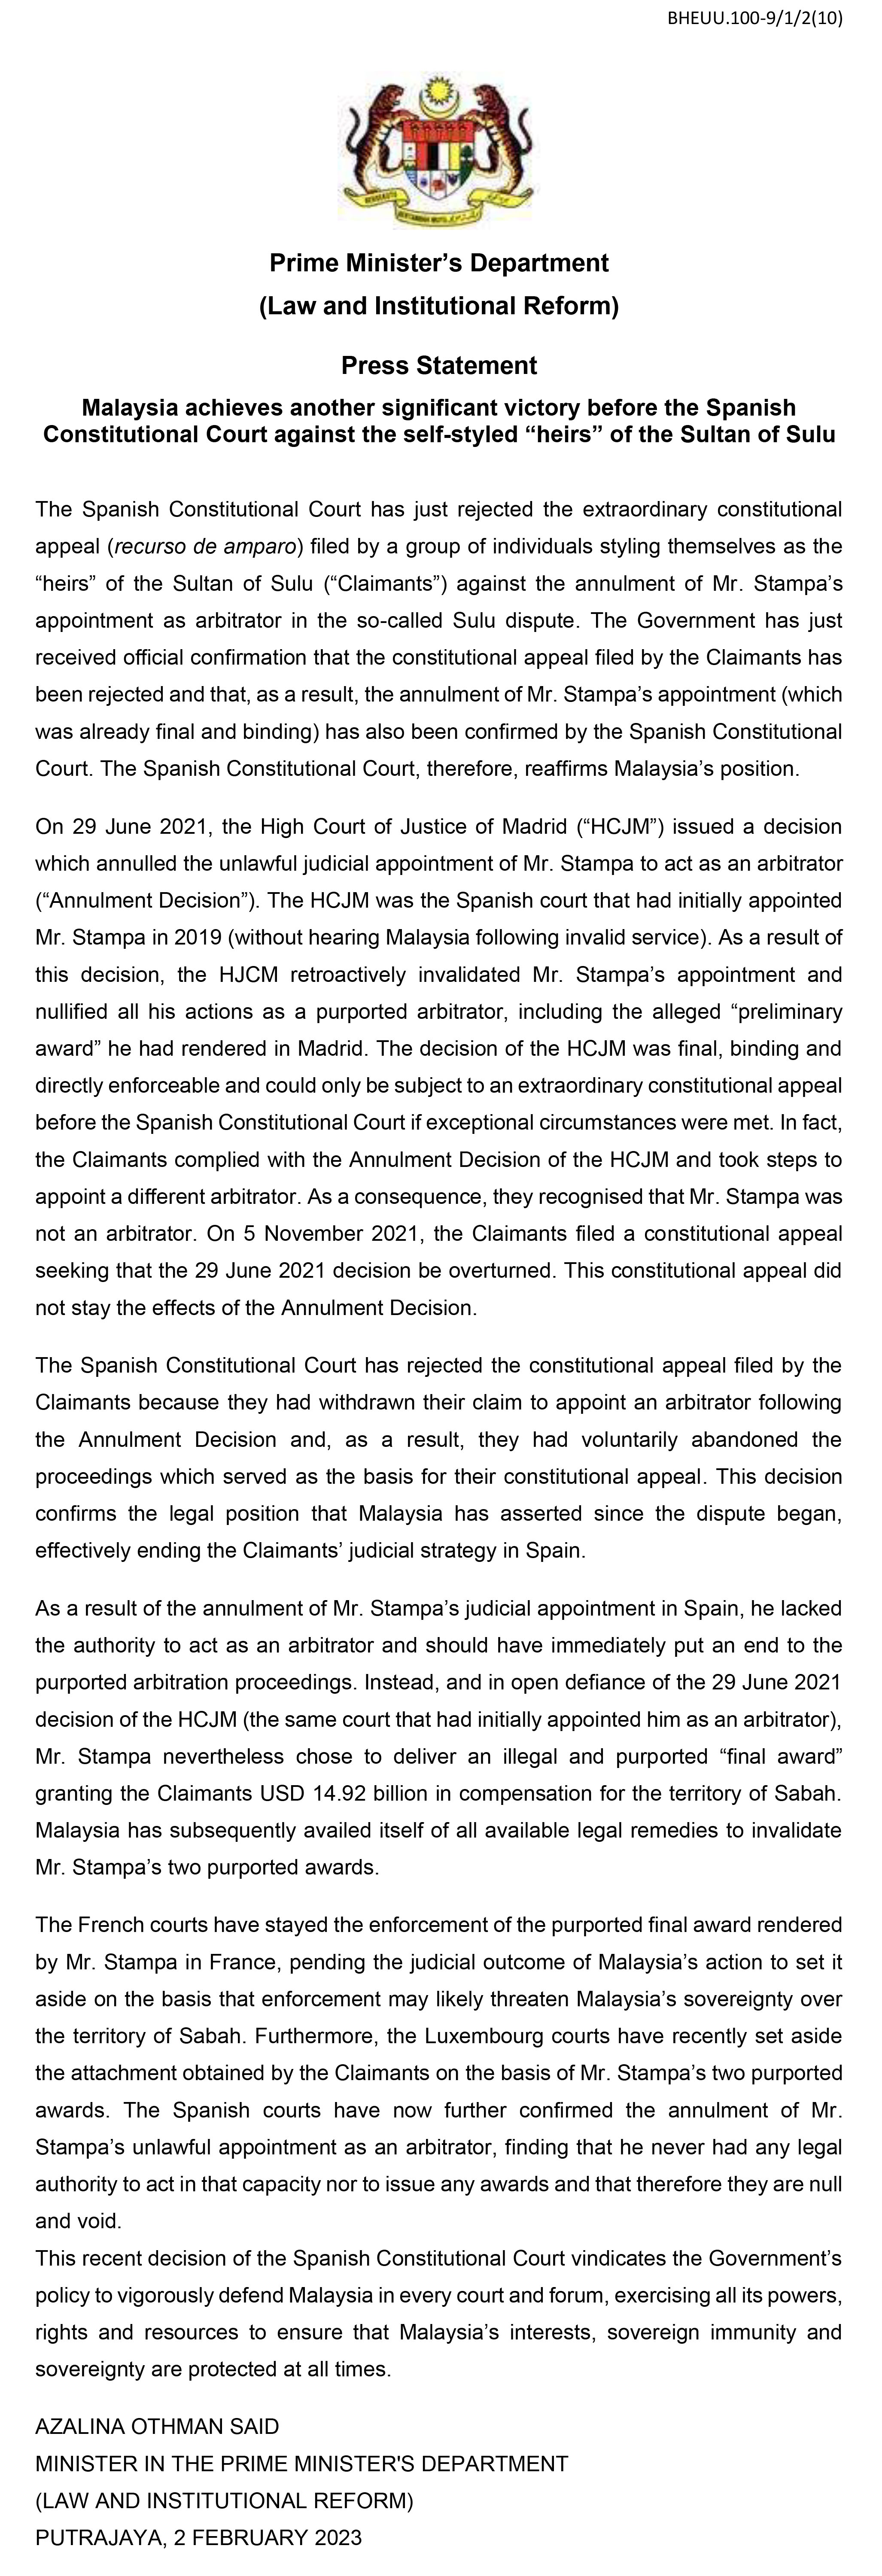 Press Statement Sulu Spanish Consti Court 2 2 2023 v2 1